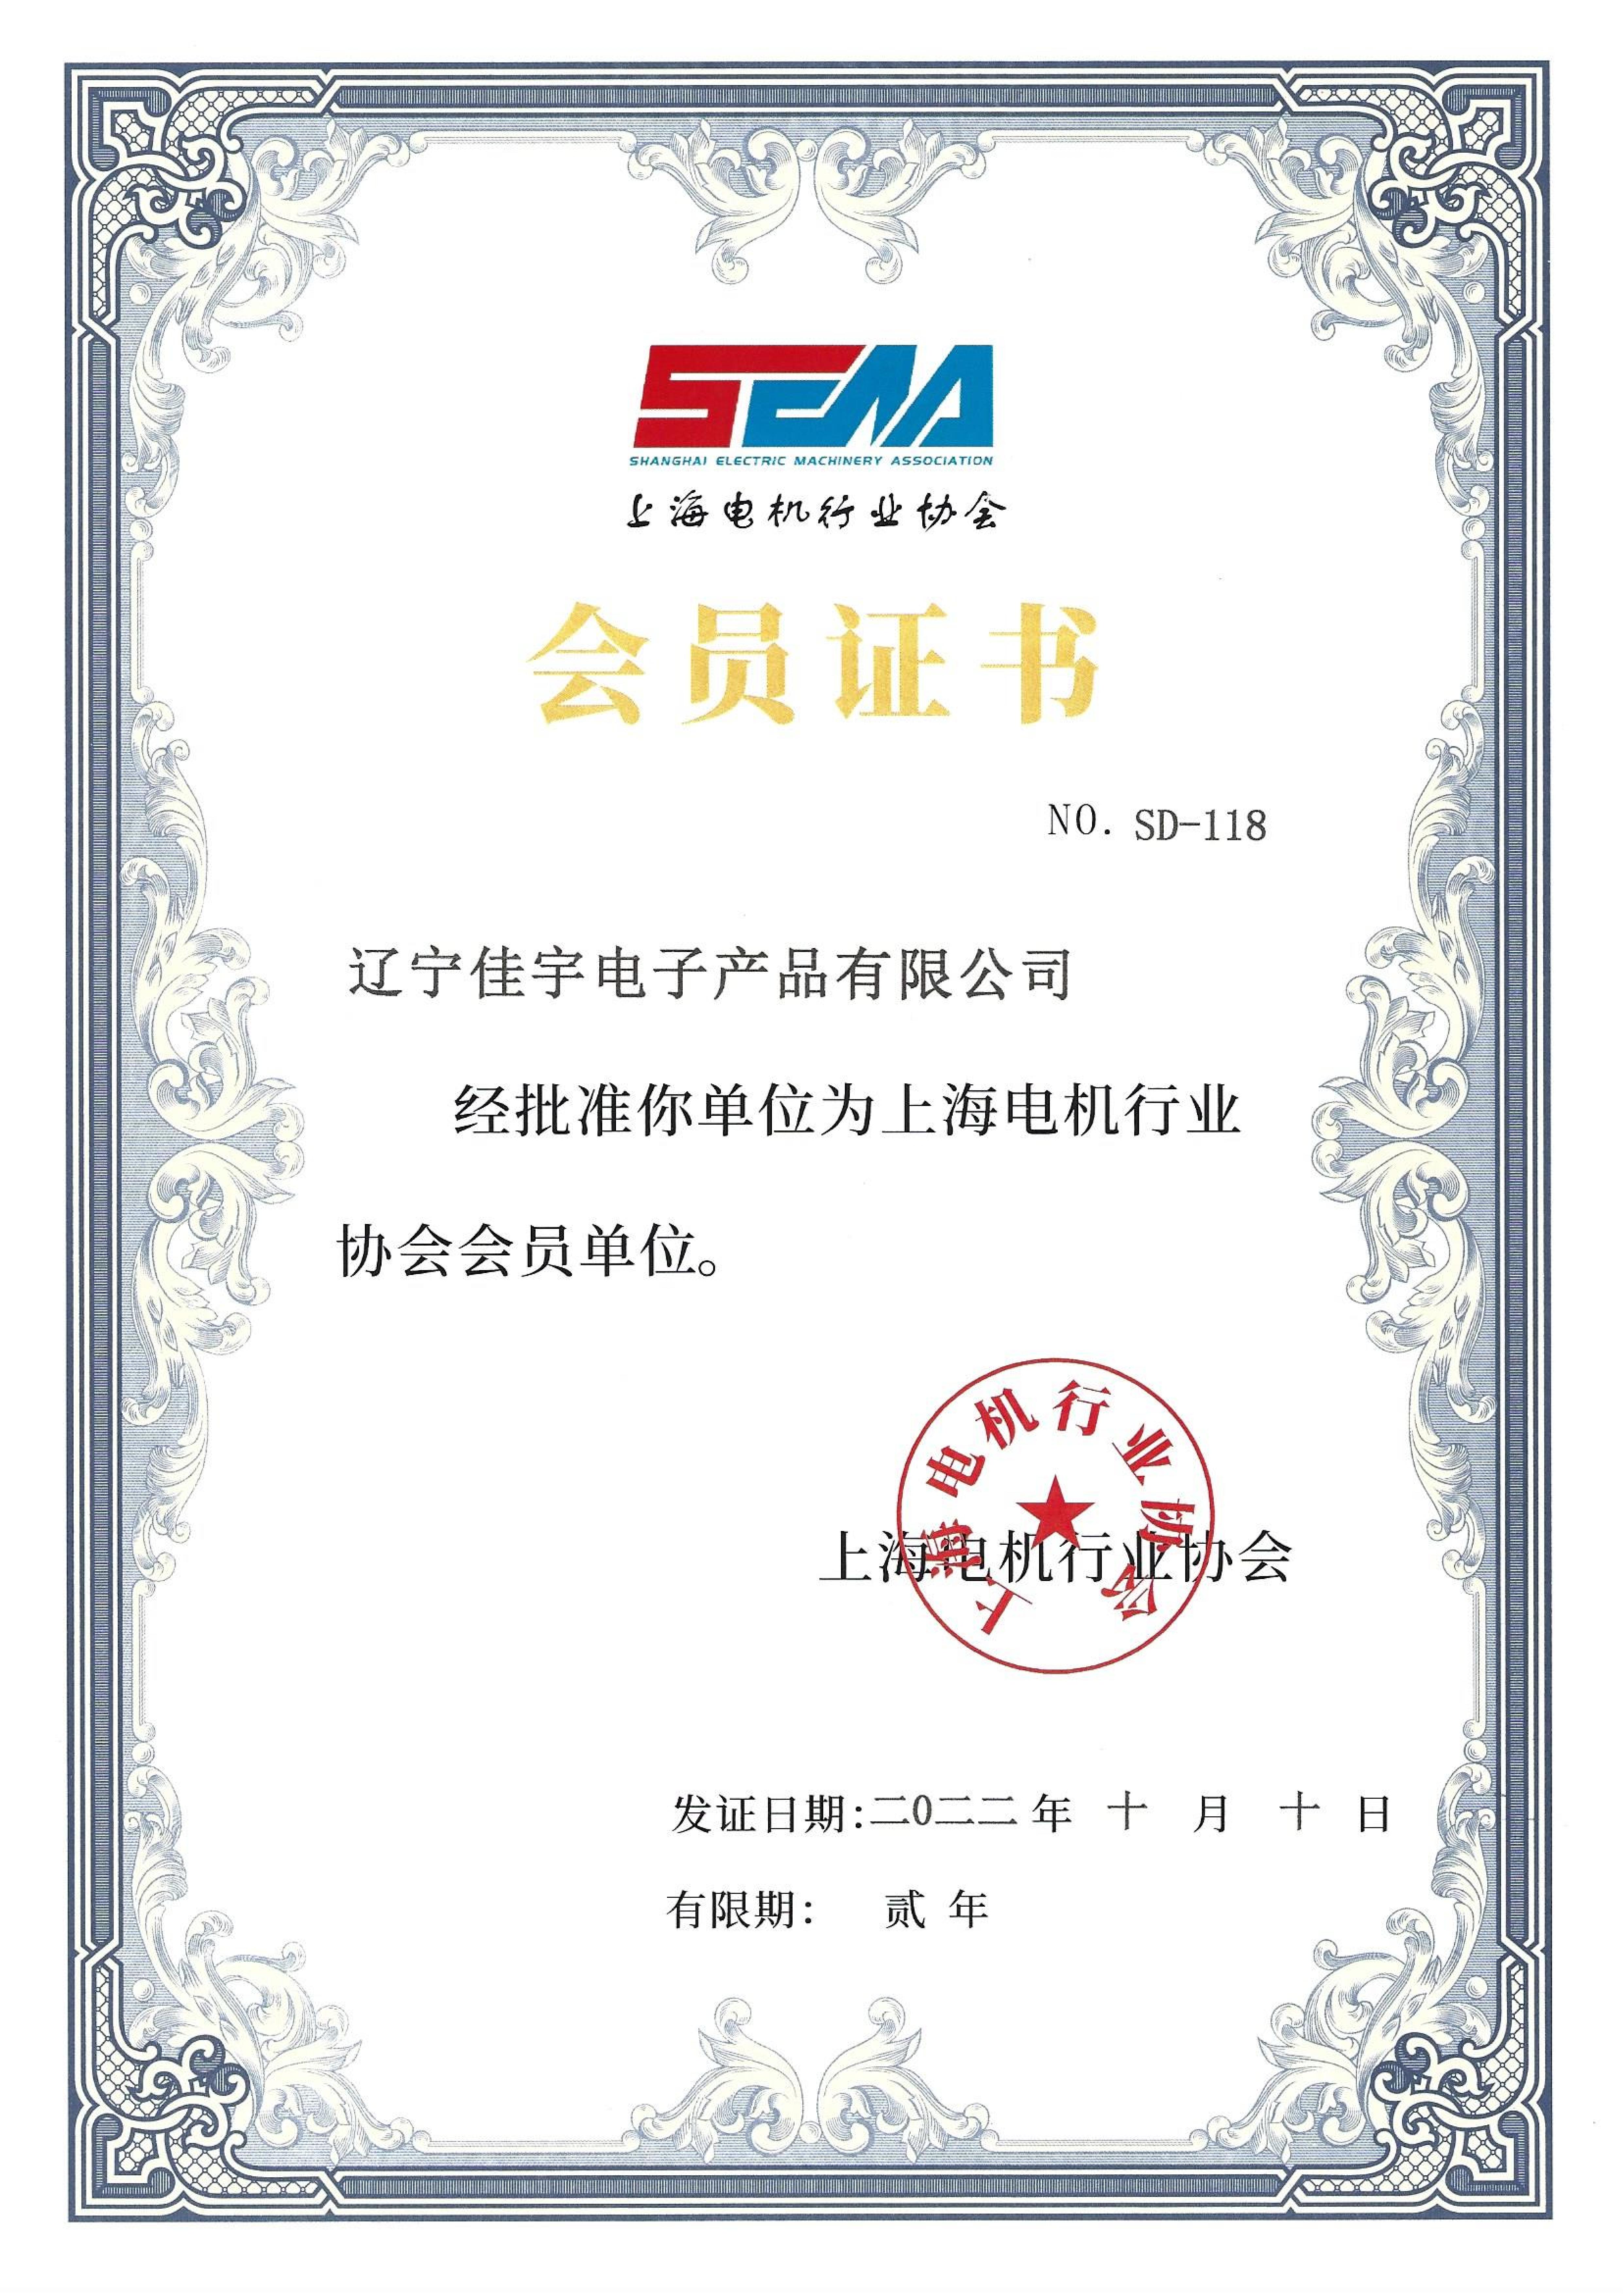 Членство в Шанхайской ассоциации электротехнической промышленности